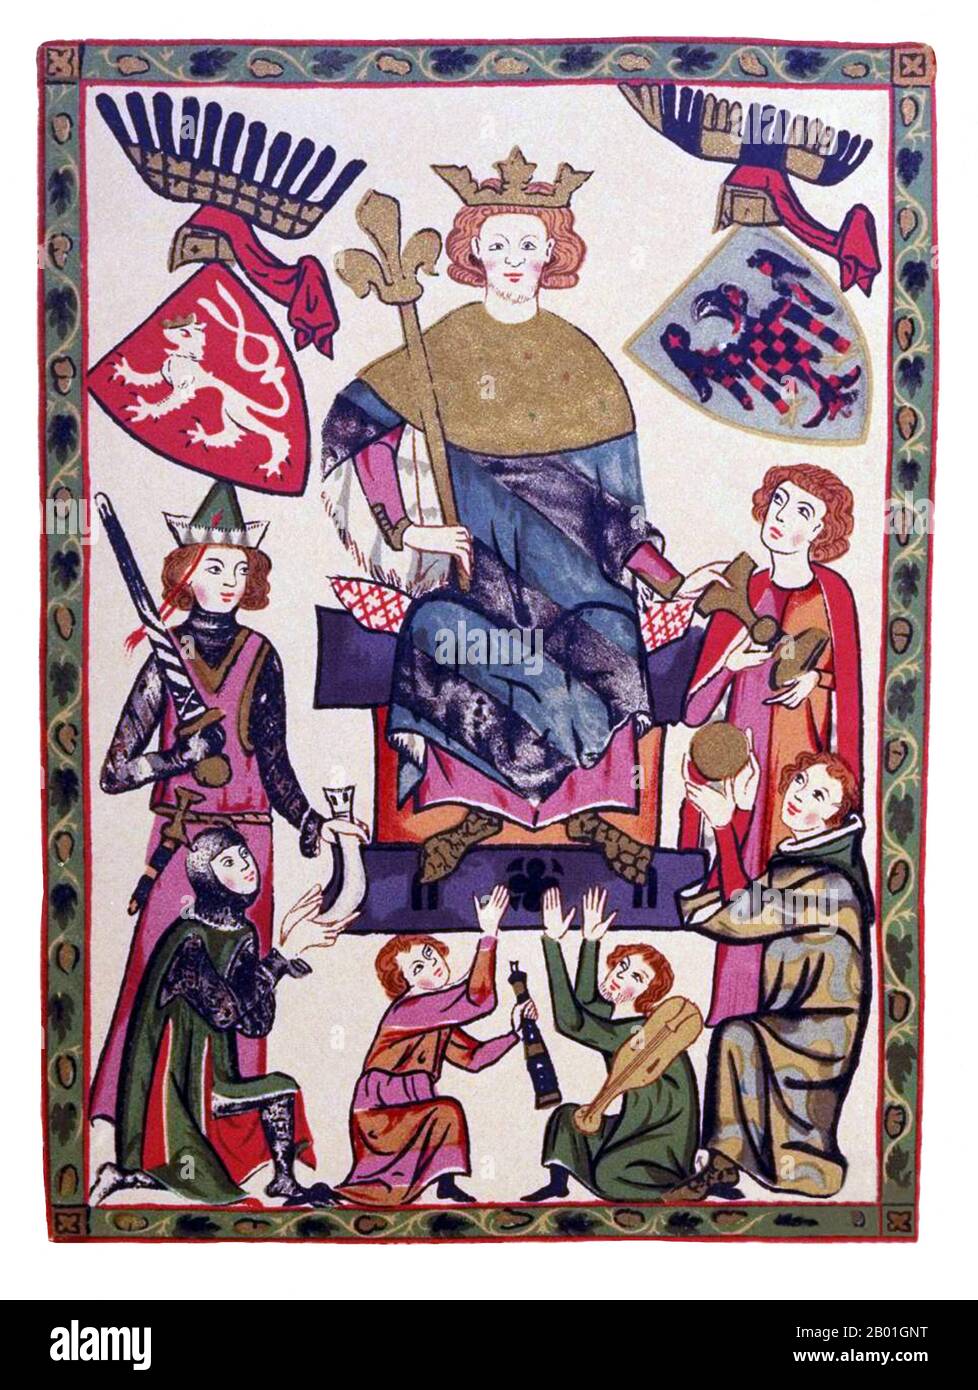 Tschechische Republik/Schweiz: "Guter König Wenzel". Miniaturmalerei aus dem Codex Manesse, c. 1304-1340. Wenceslaus II/Vaclav II von Böhmen (27. September 1271 - 21. Juni 1305), war der König von Böhmen (1278-1305) und Polen (1300-1305) und Herzog von Krakau (1291-1305). Als einziger Sohn von König Ottokar II. Und Mitglied der Přemyslid-Dynastie war er mit Judith von Habsburg verheiratet, Tochter von Rudolf I, König der Römer. Er hat die Krone Ungarns durch seinen Sohn, Wenceslaus III., beansprucht, aber er starb, bevor er sie vollständig sichern konnte. Er galt als einer der wichtigsten tschechischen Könige. Stockfoto